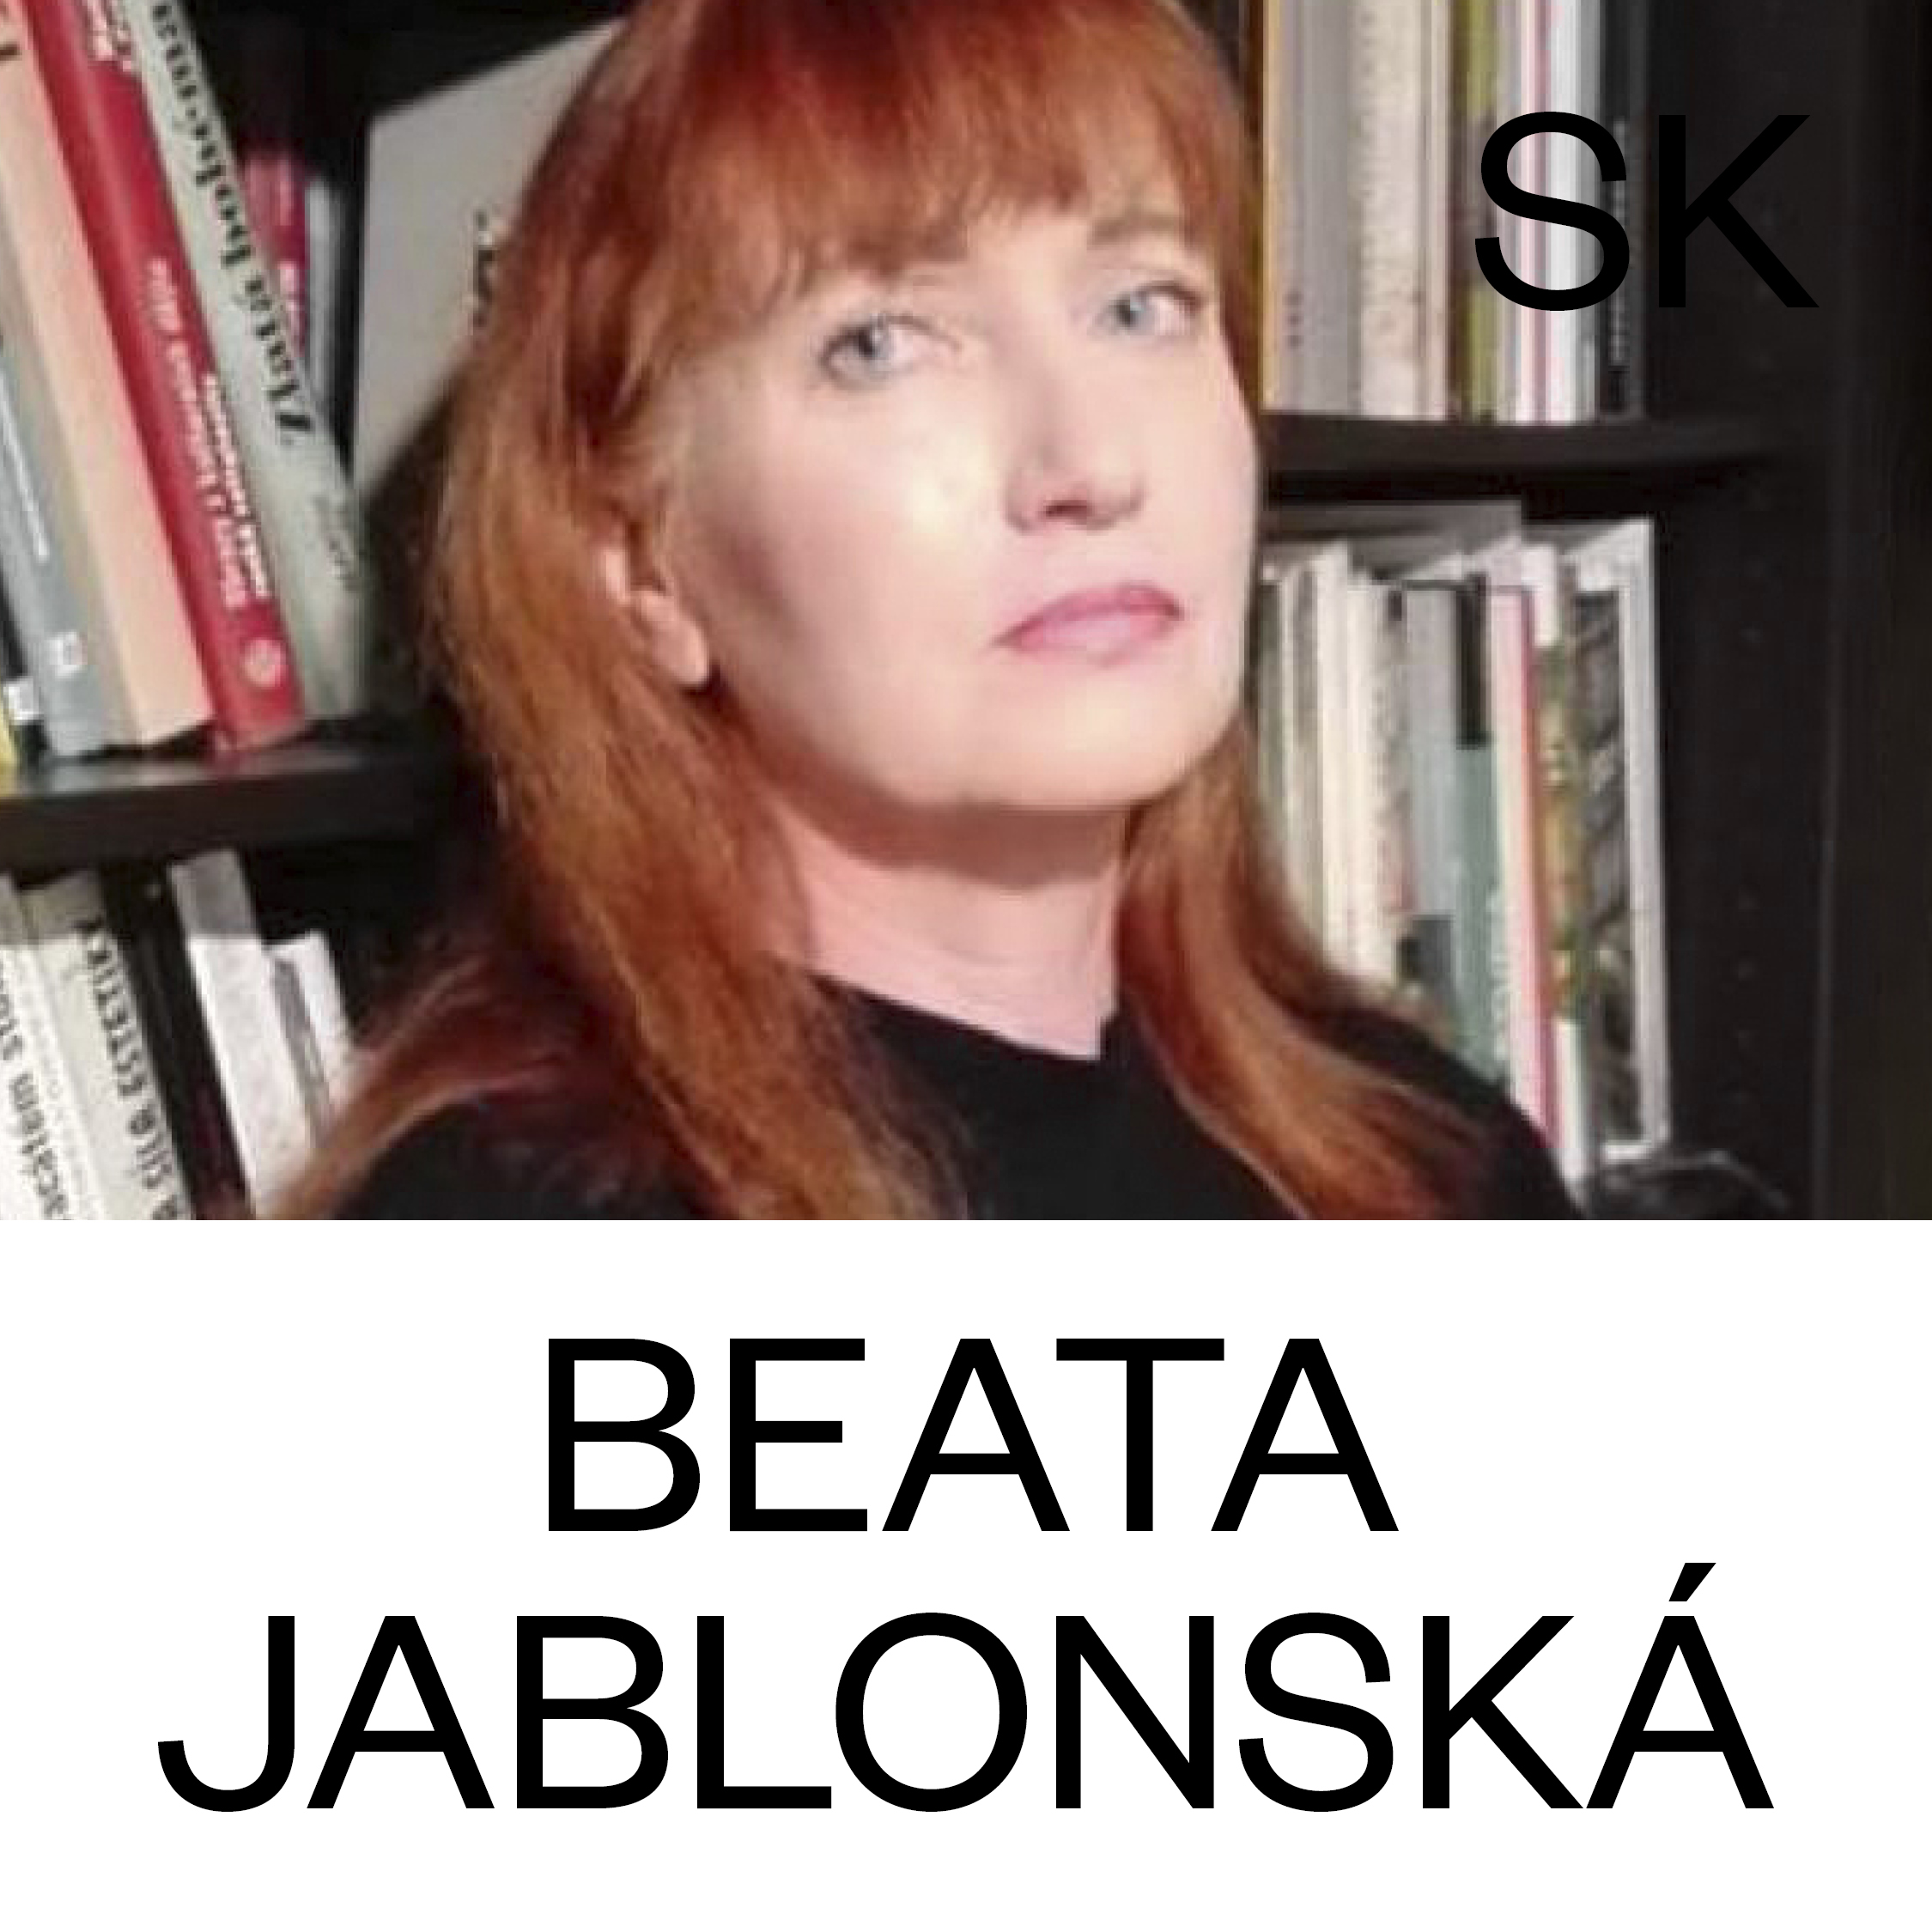 Beata Jablonska